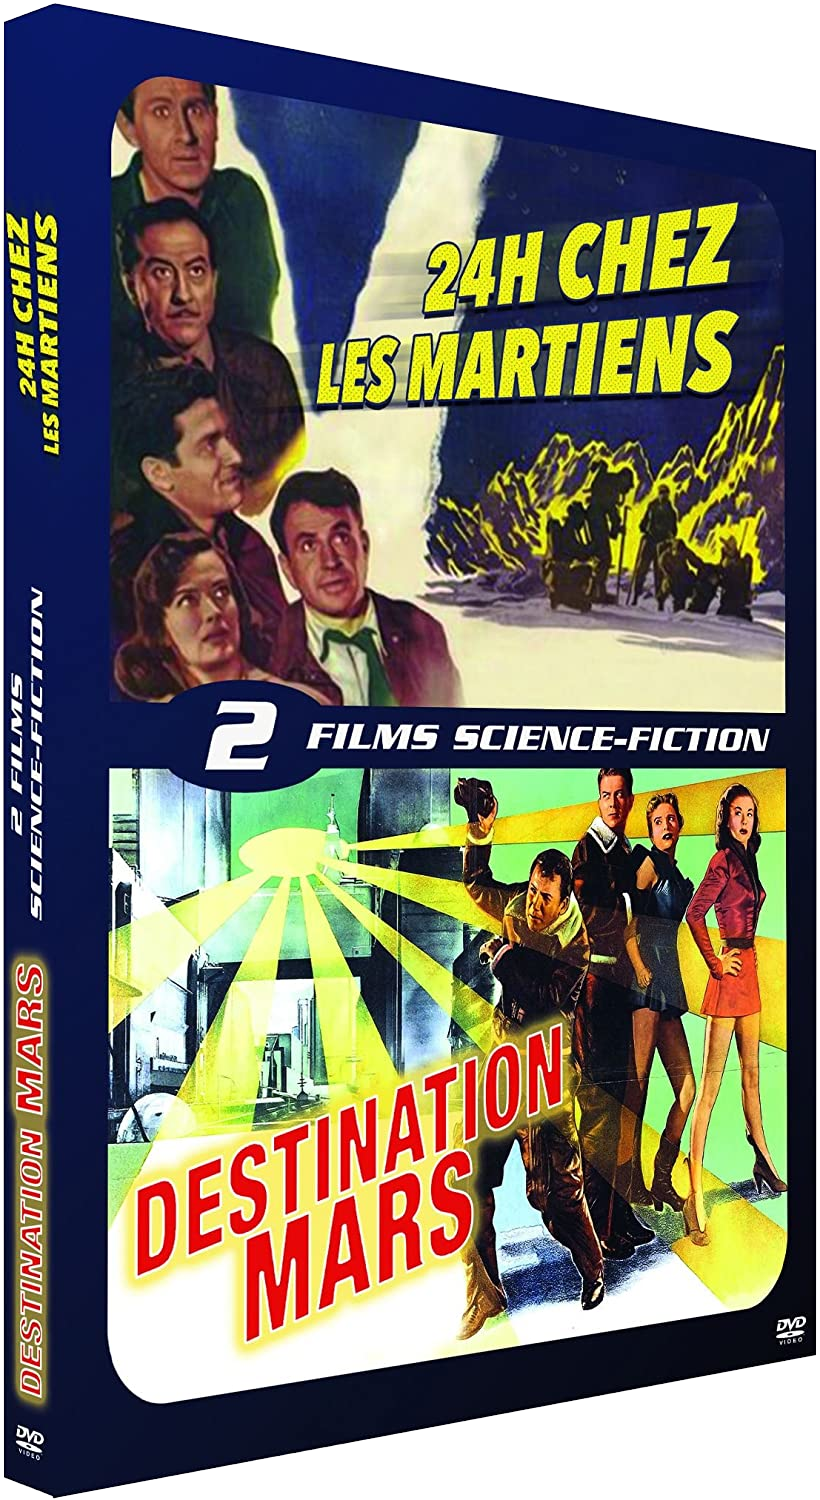 24 heures chez les martiens + Destination Mars (1950) - DVD